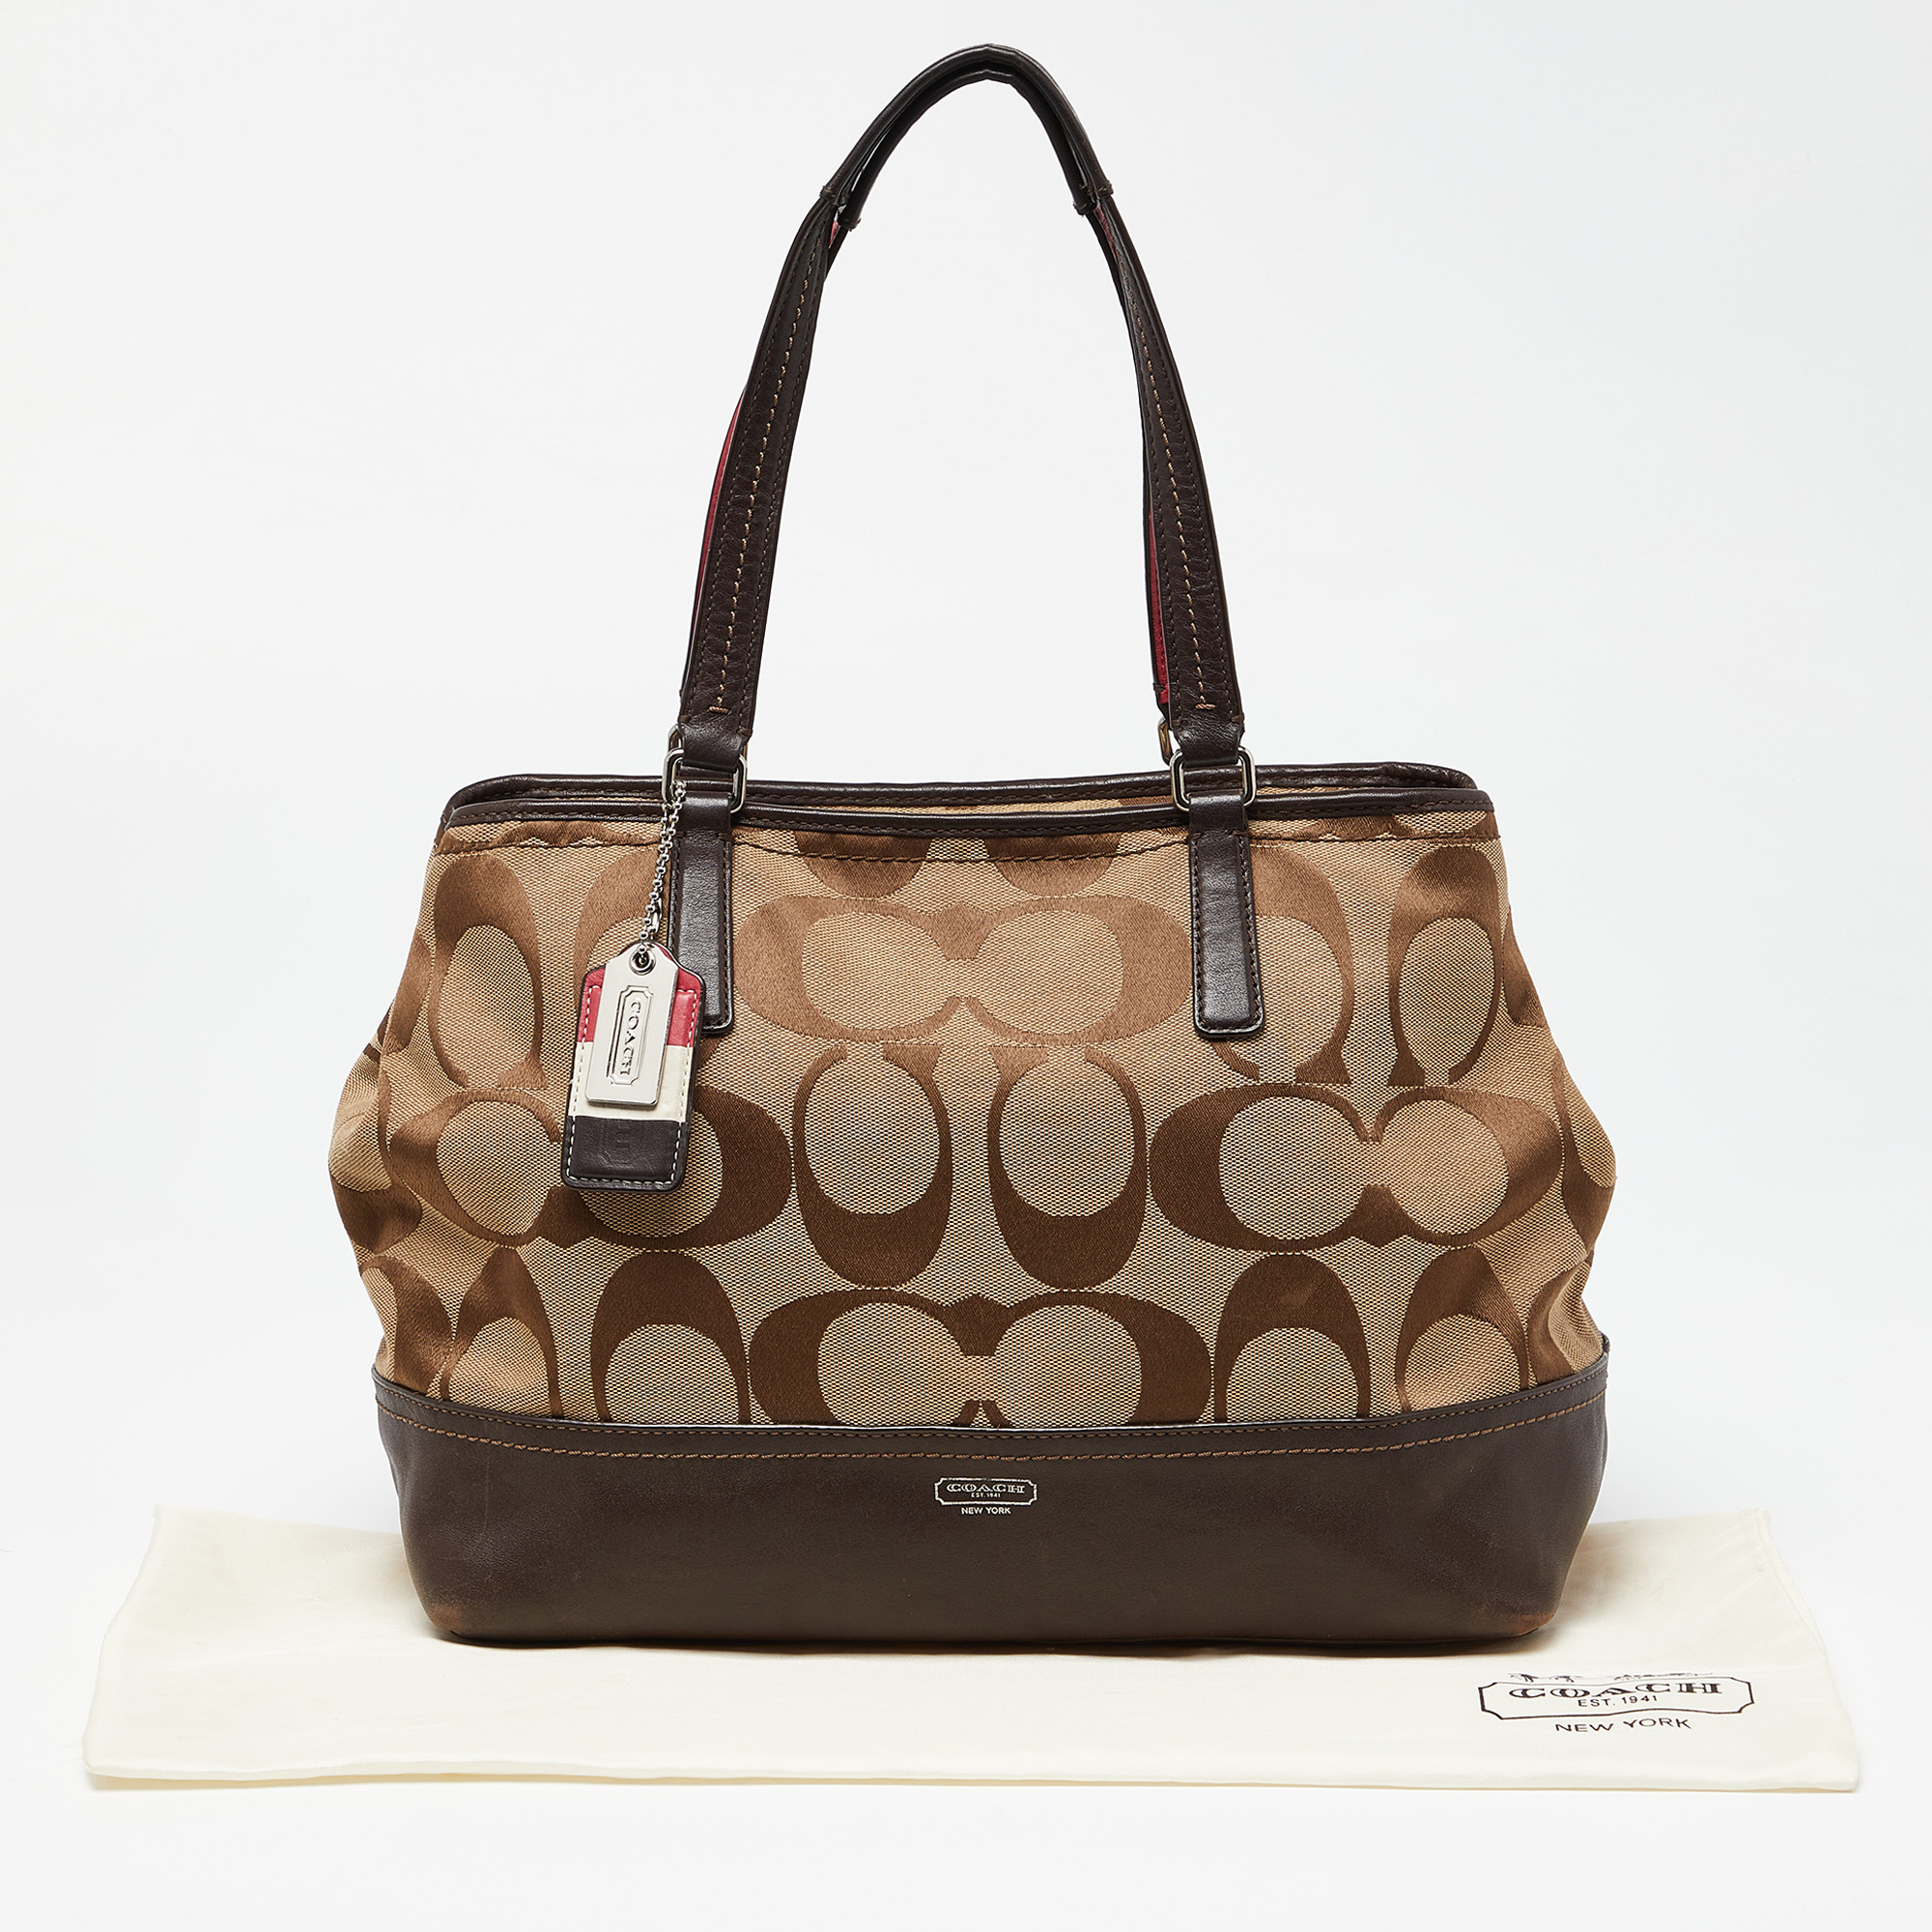 Coach hand bag | Bags, Coach, Handbags